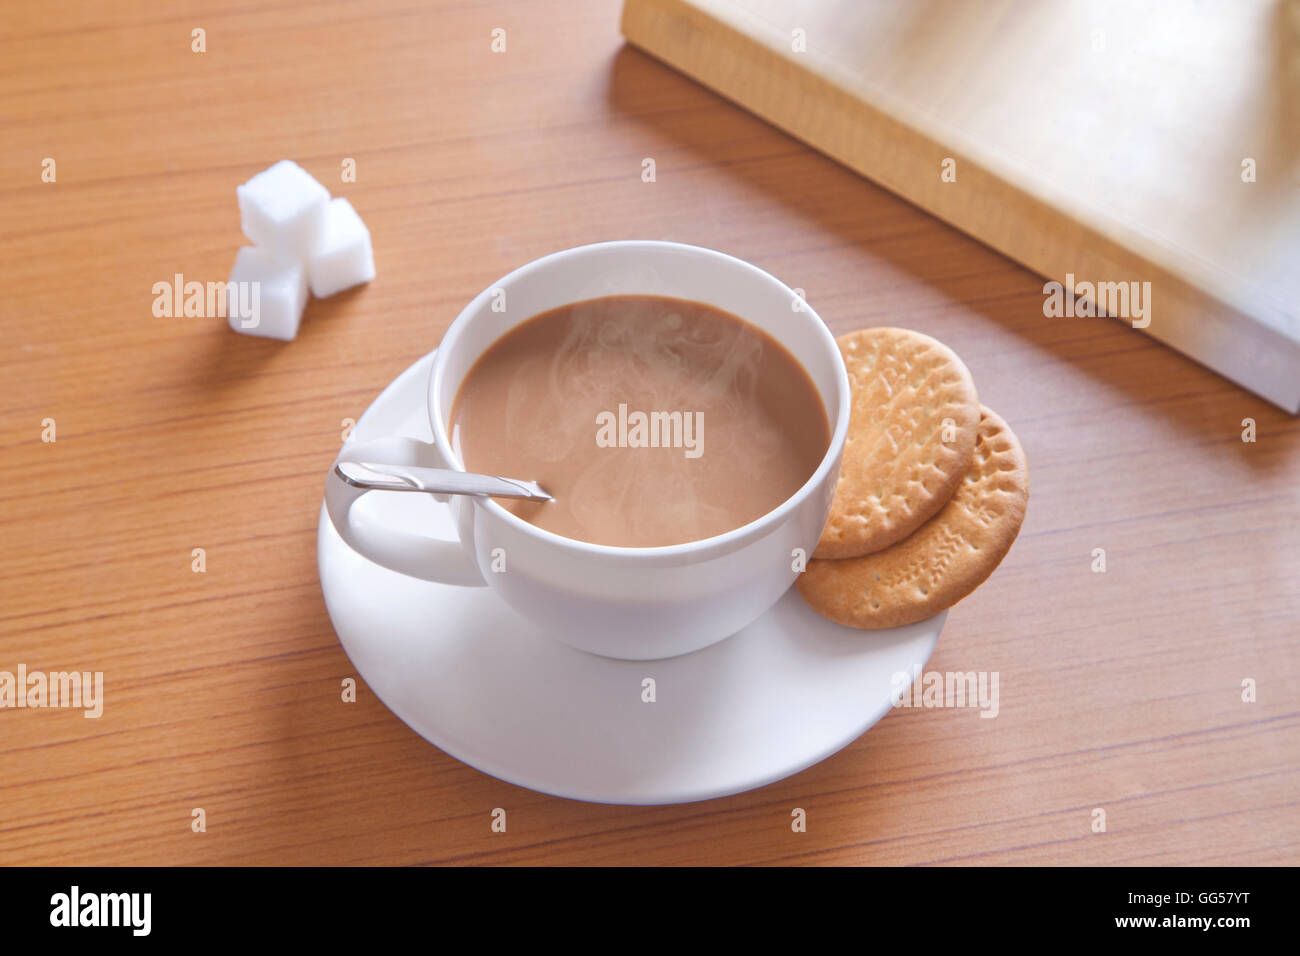 Close-up di tè caldo, biscotti e cubetti di zucchero sul tavolo Foto Stock